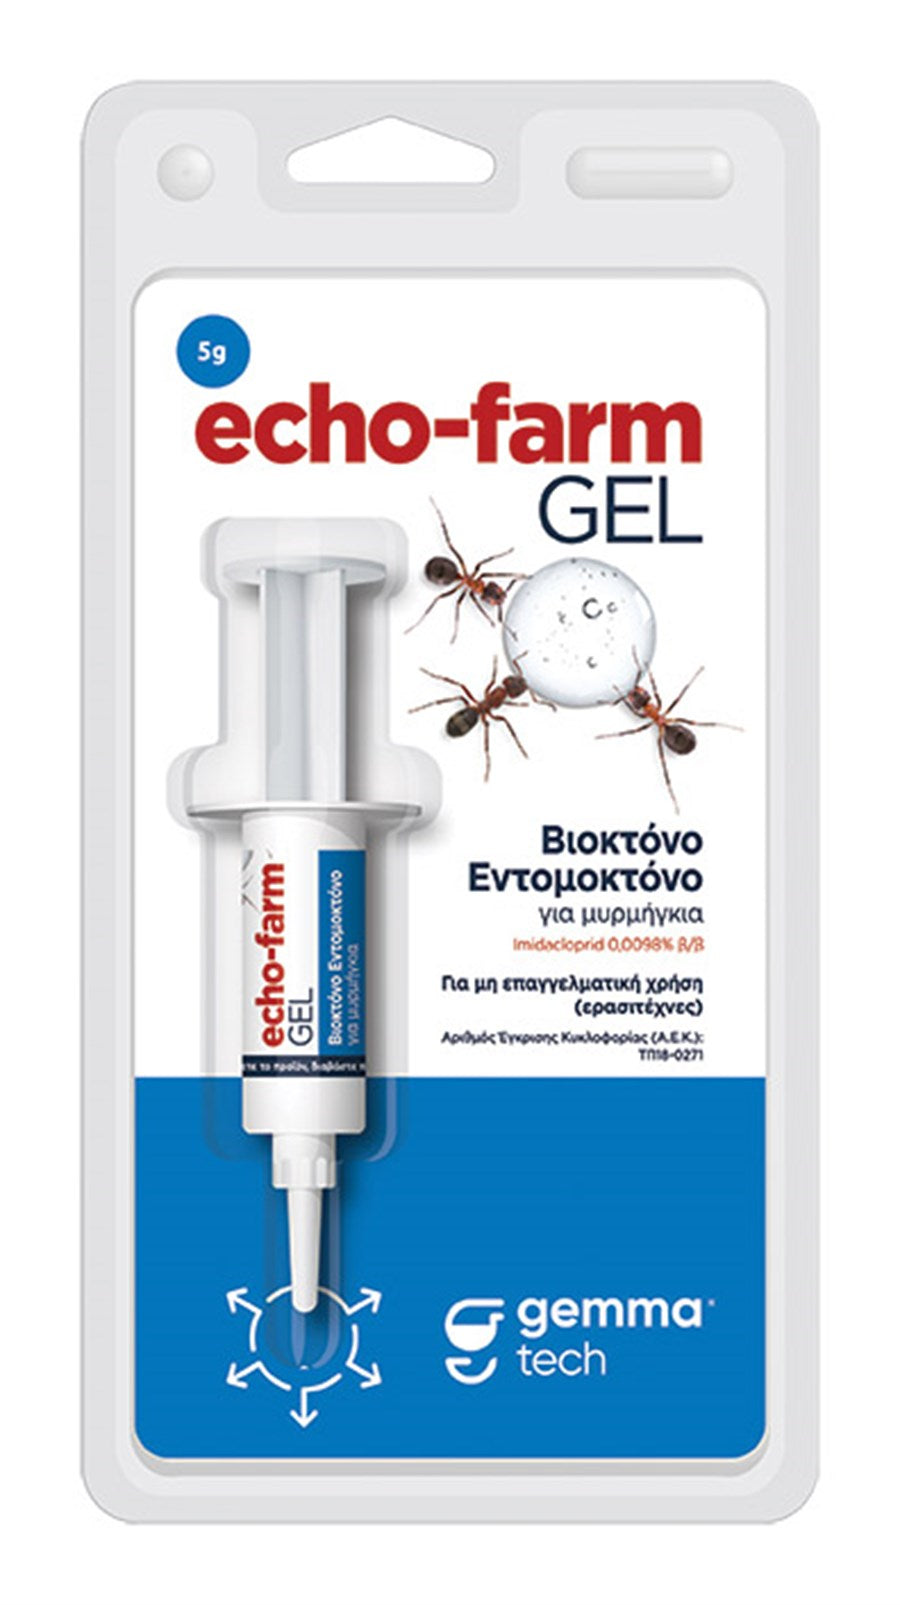 Echo-farm gel 5 g